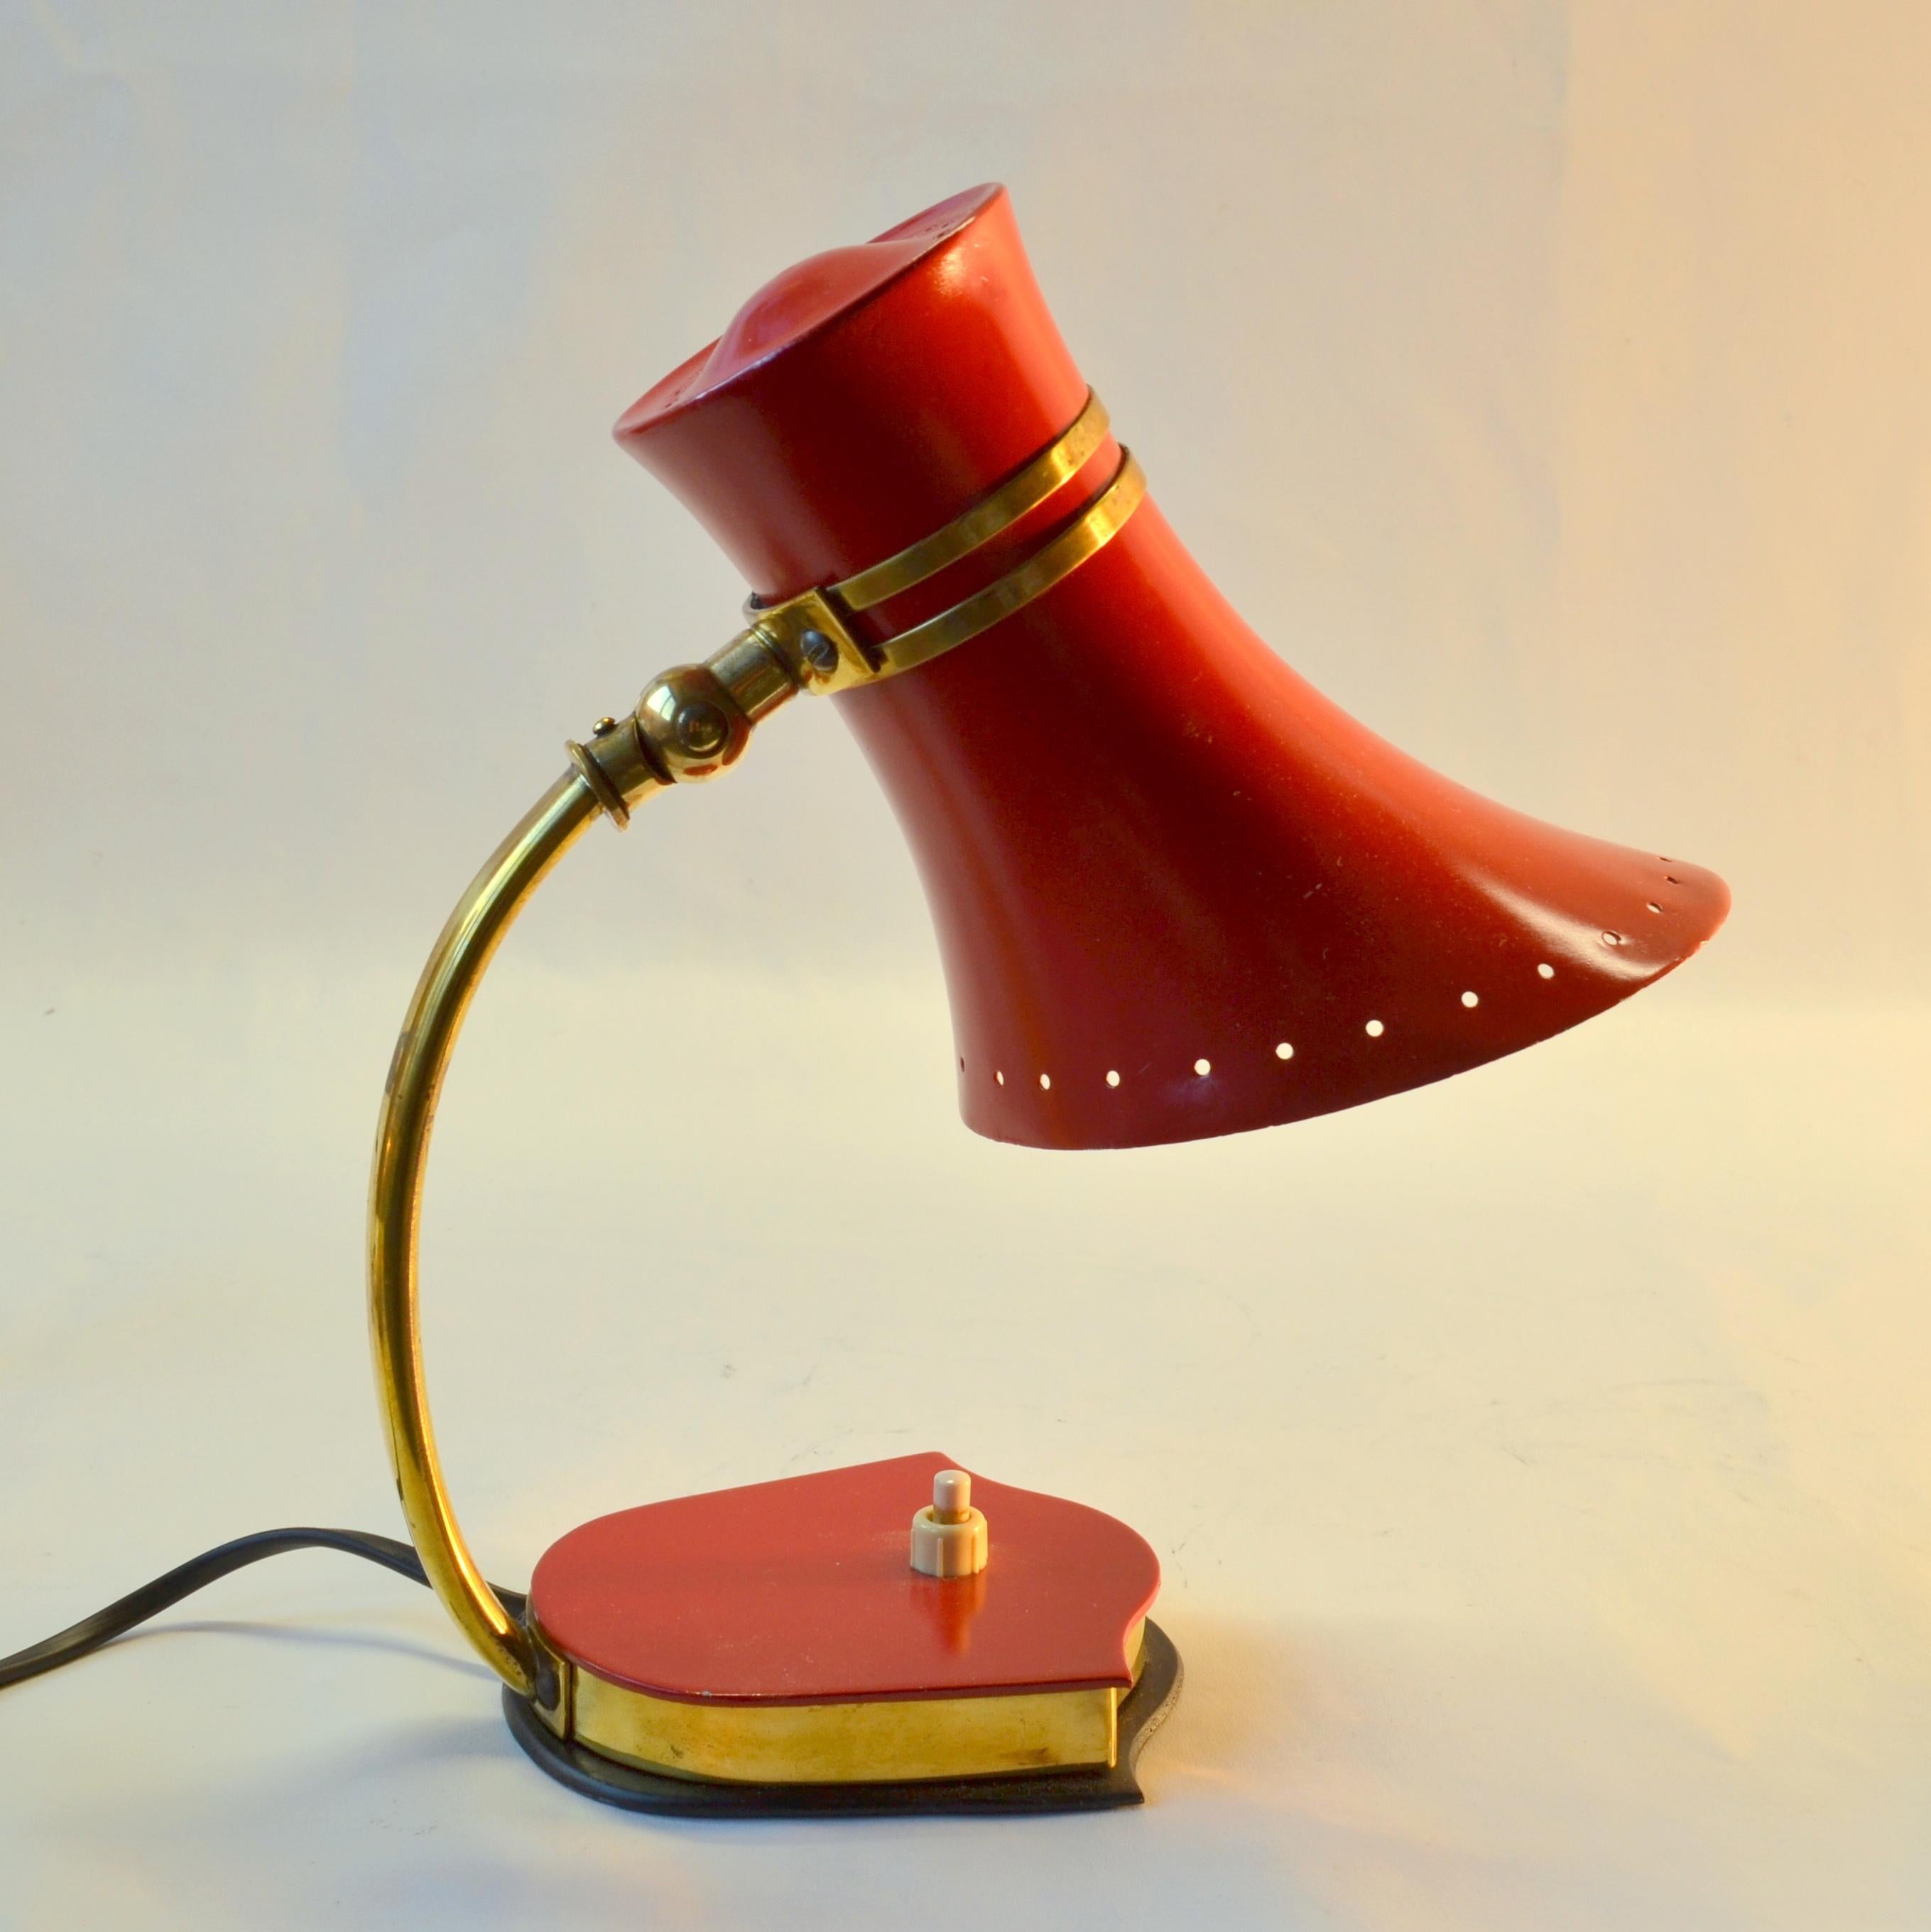 Paire de lampes de table en forme de cloche en aluminium émaillé rouge et jaune et en laiton, originales de Stilnovo Mid-Century Modern, avec des articulations réglables pour orienter la source lumineuse. Ces produits émaillés italiens  ont été